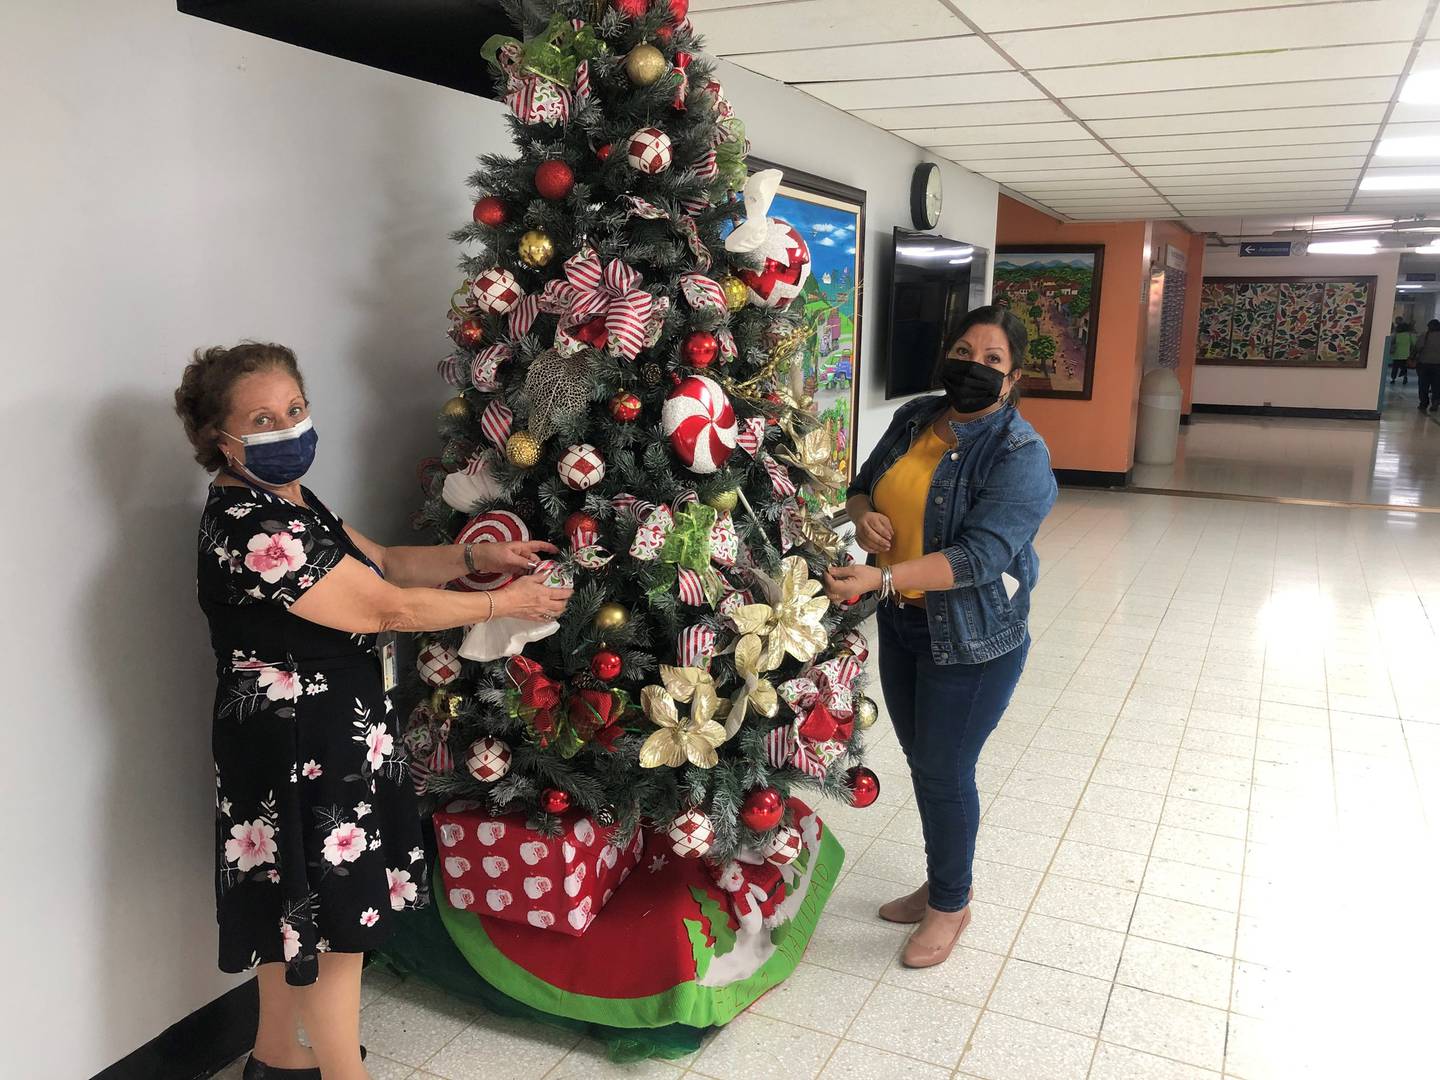 El Hospital Nacional de Niños se llena de color cada navidad gracias a la creatividad e iniciativa de Elsa Castro y Lidieth Chaves, las cuales se hacen cargo de la decoración navideña del centro pediátrico de manera voluntaria.